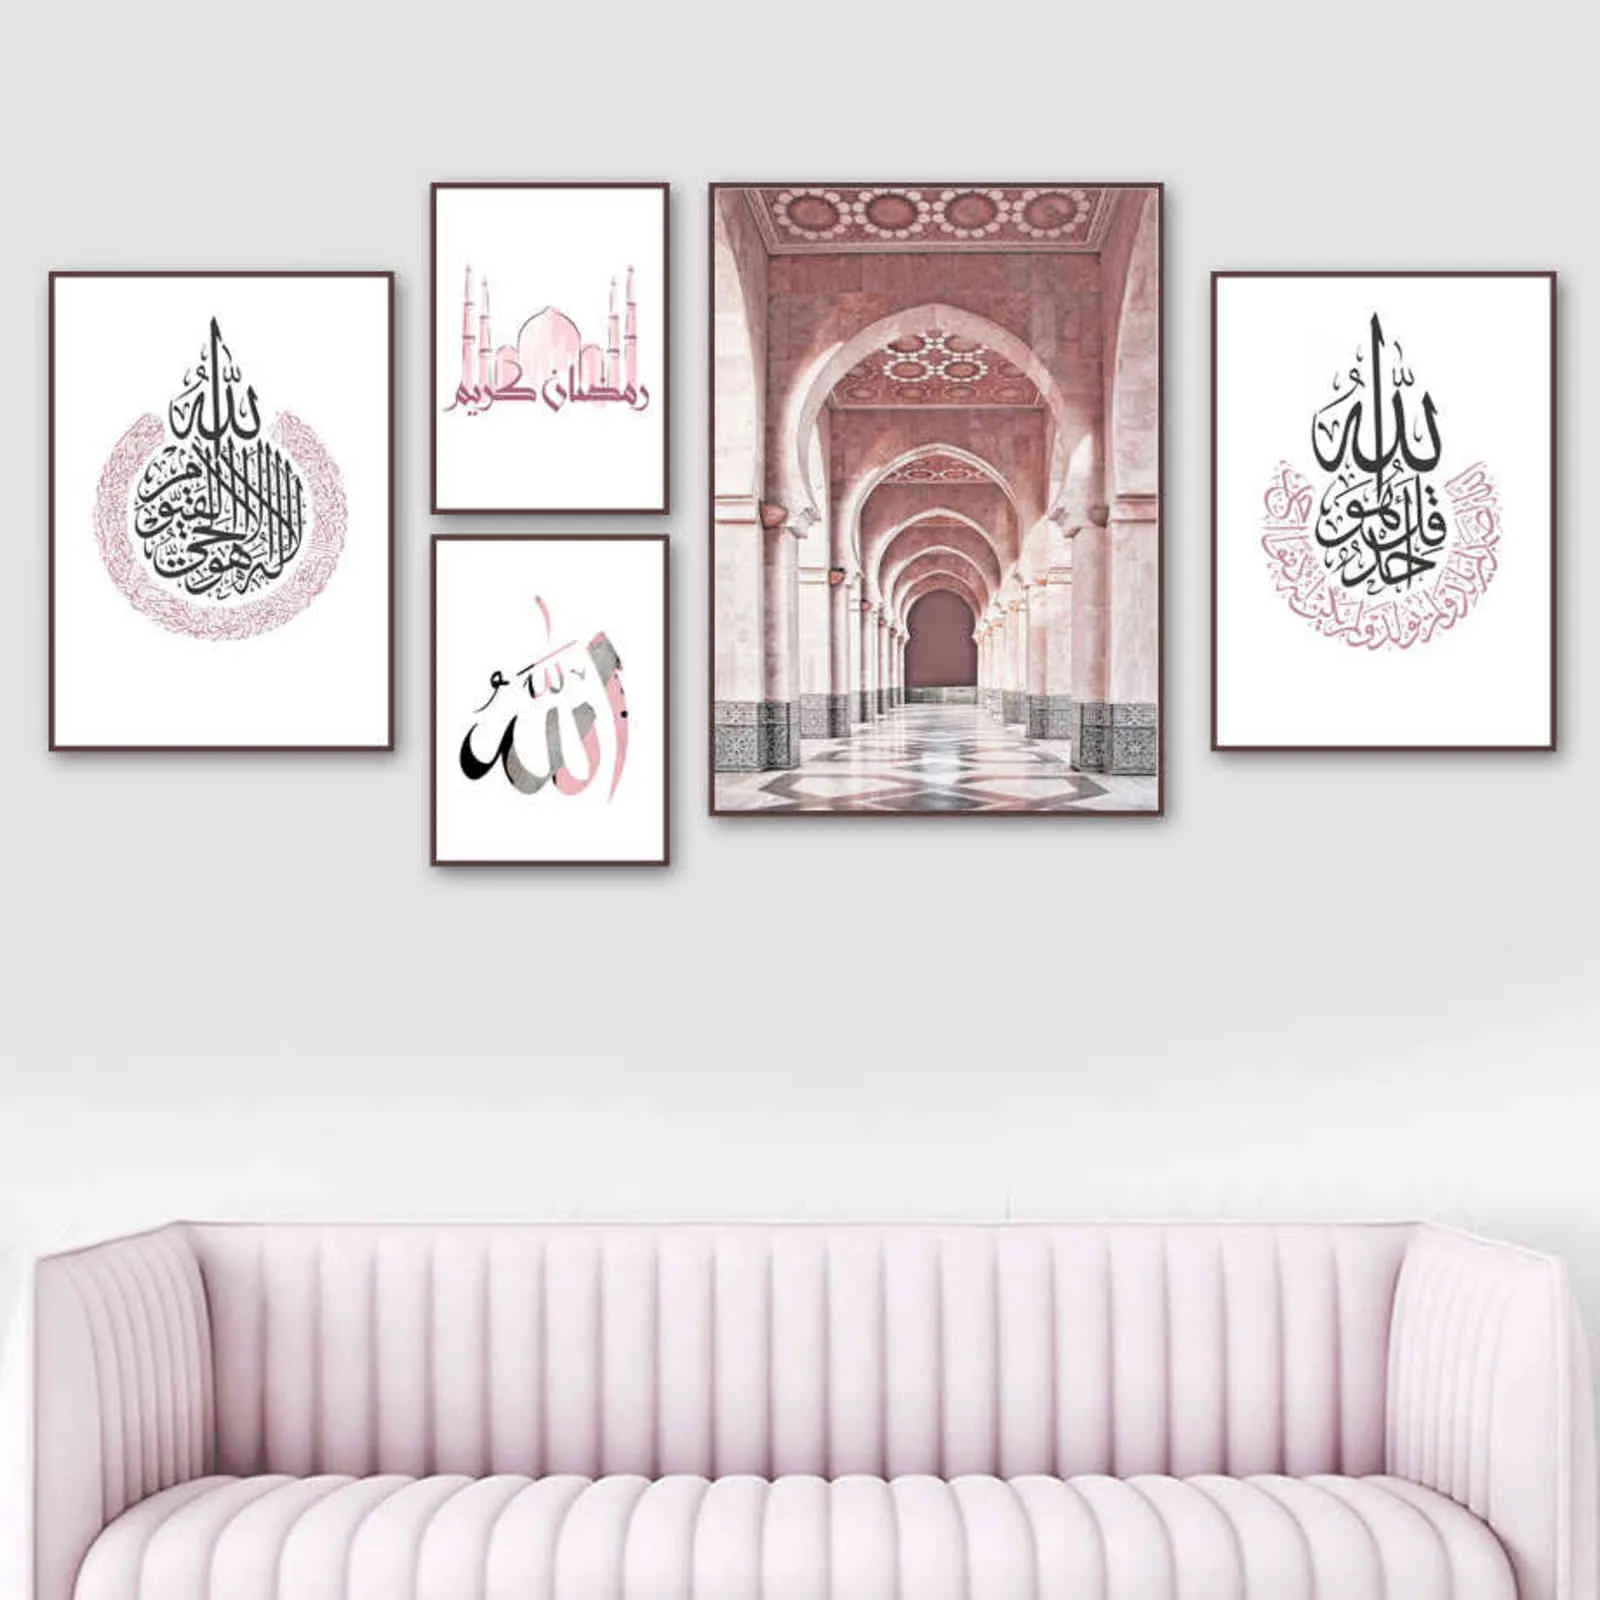 Marokkanische Moschee Arabische Kalligraphie Islamische Poster Wandkunst Druck Leinwand Malerei Nordic Wandbilder Für Wohnzimmer Dekoration H1110